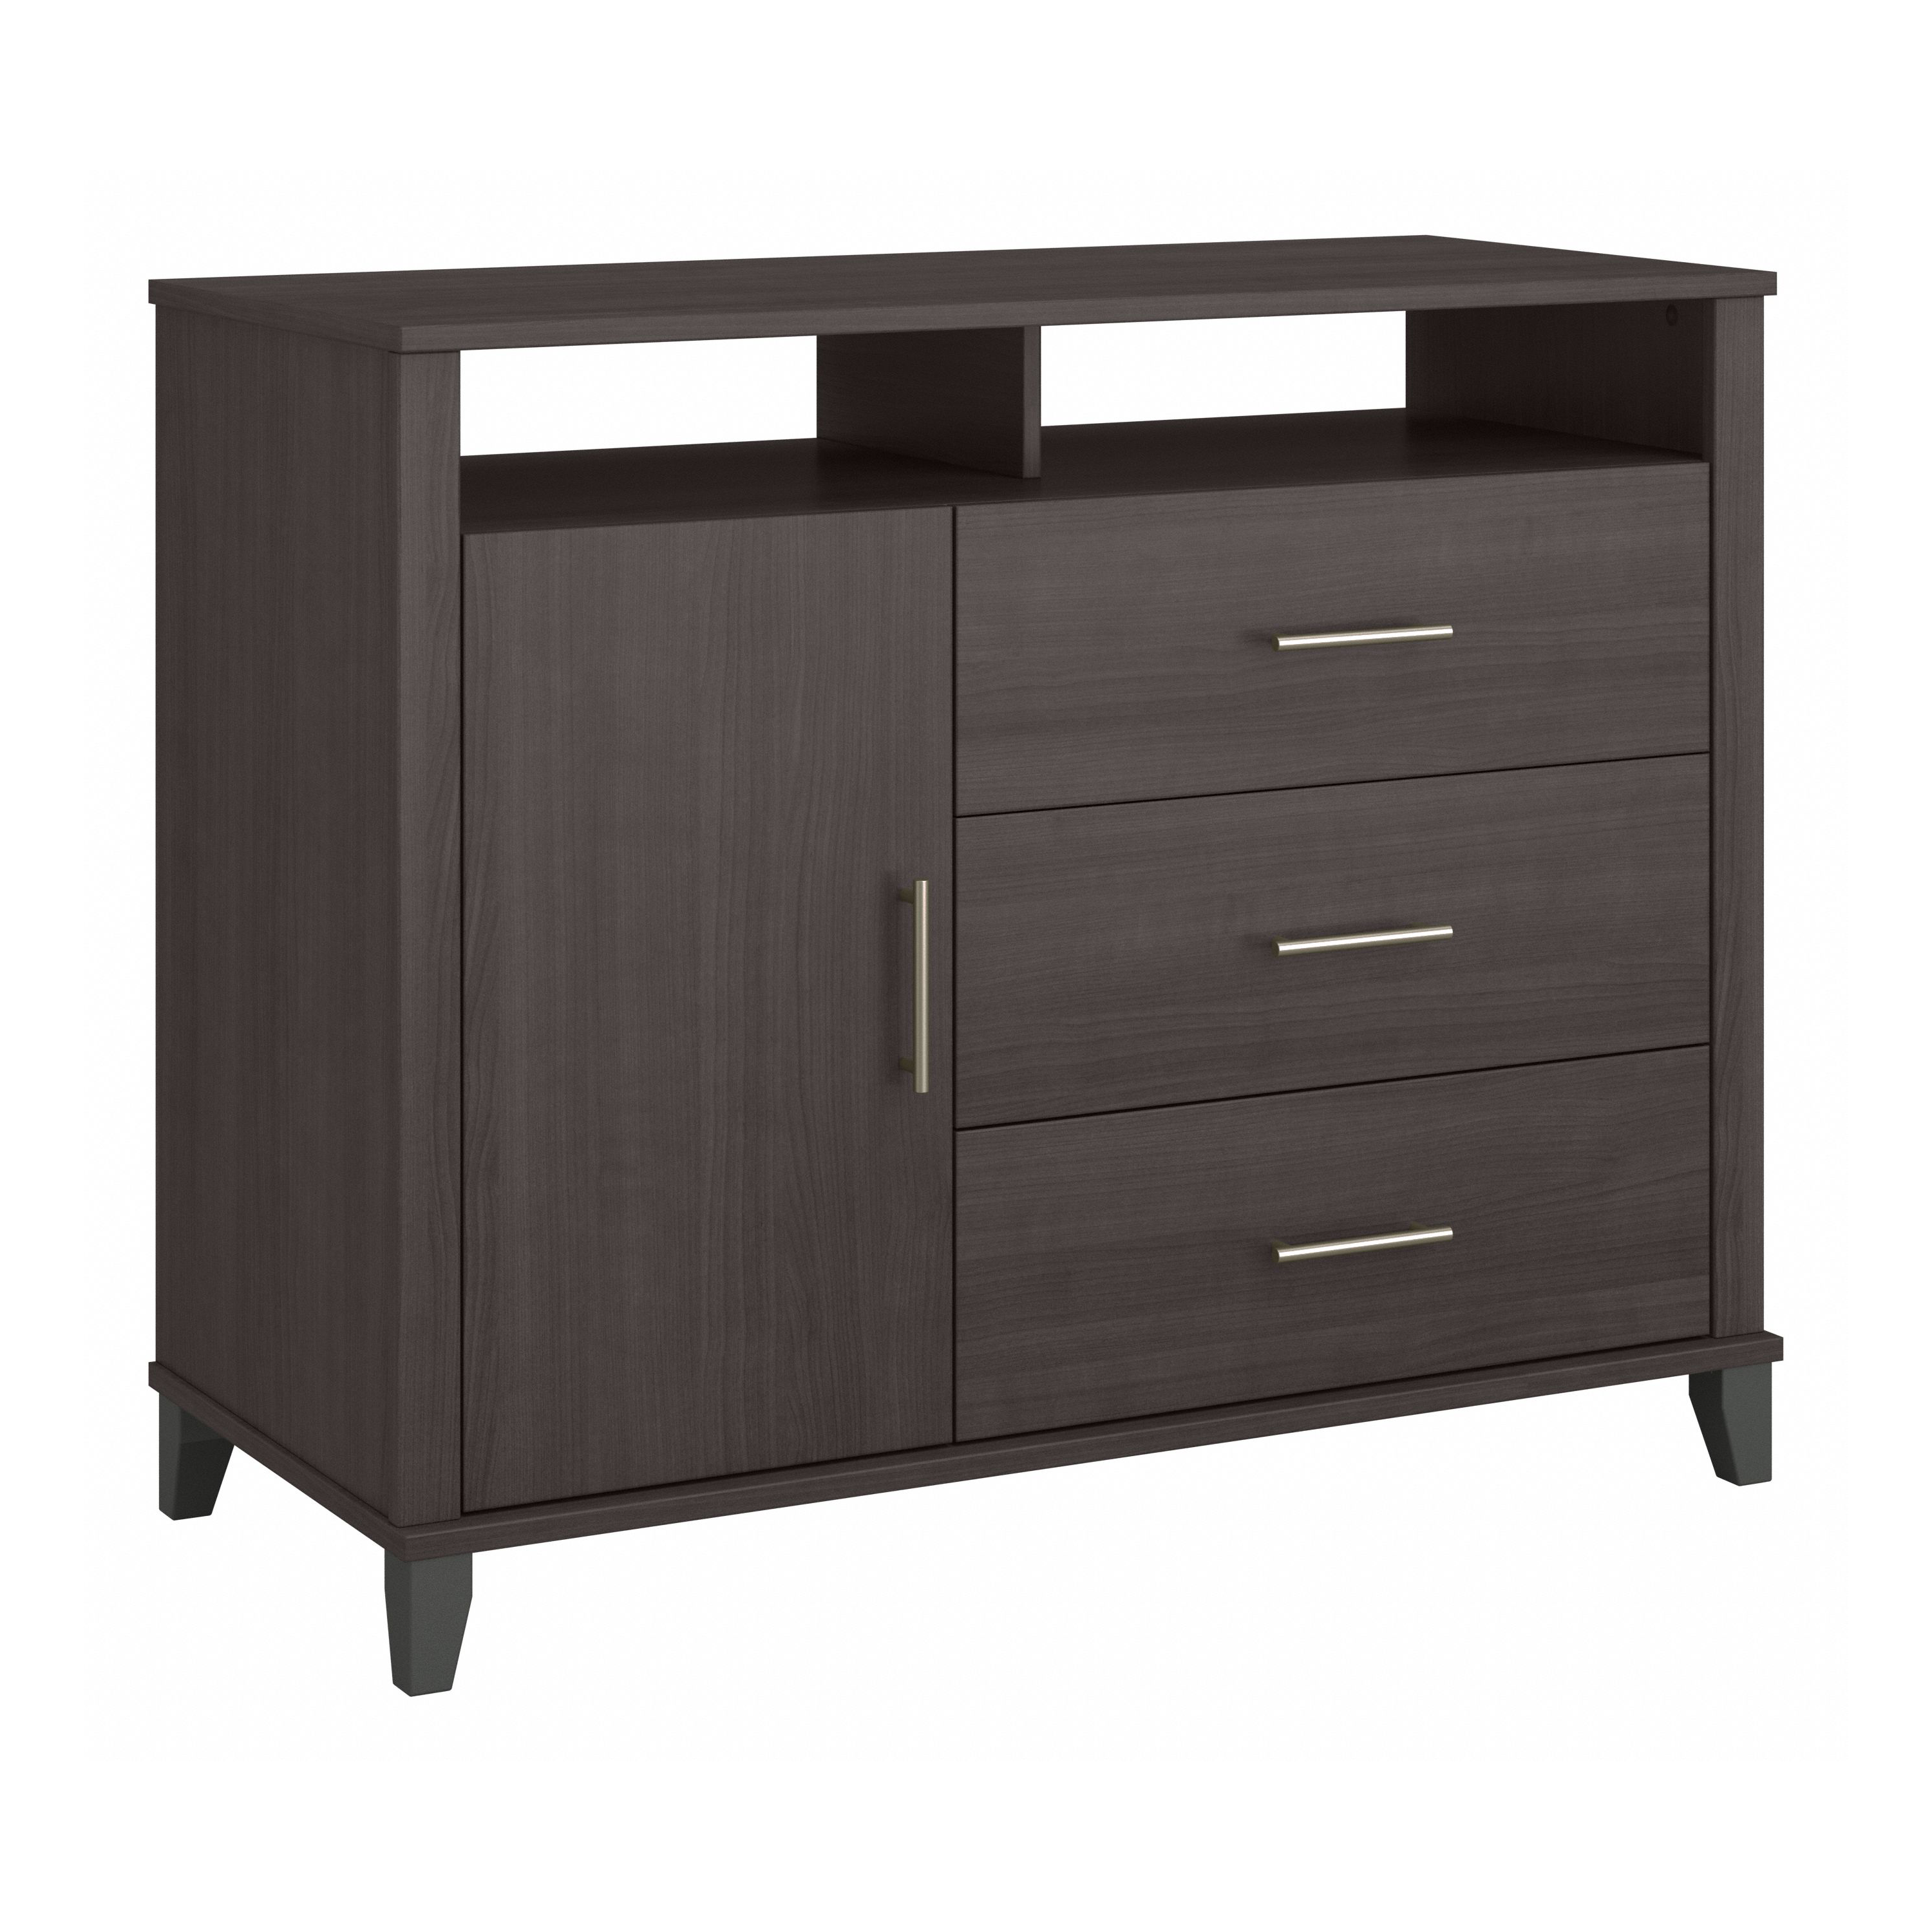 Shop Bush Furniture Somerset 3 Drawer Dresser and Bedroom TV Stand 02 STV148SGK #color_storm gray